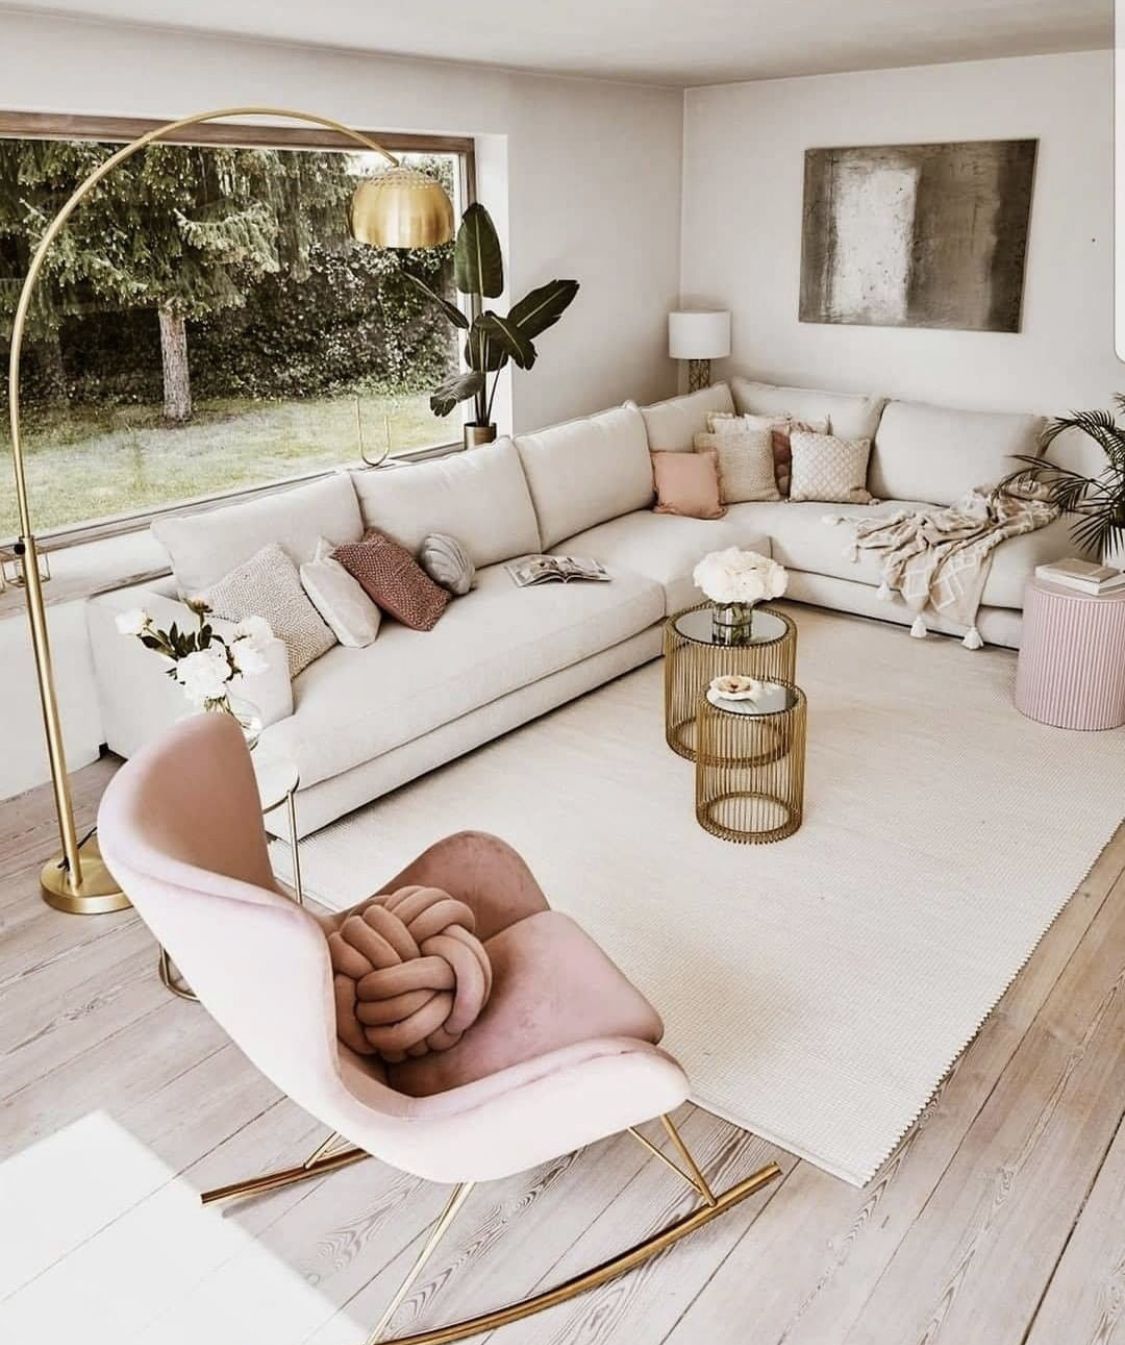 Những ý tưởng thiết kế phòng khách khiến bạn phải xuýt xoa bởi vẻ đẹp thanh lịch, quá đỗi hút hồn - Ảnh 2.